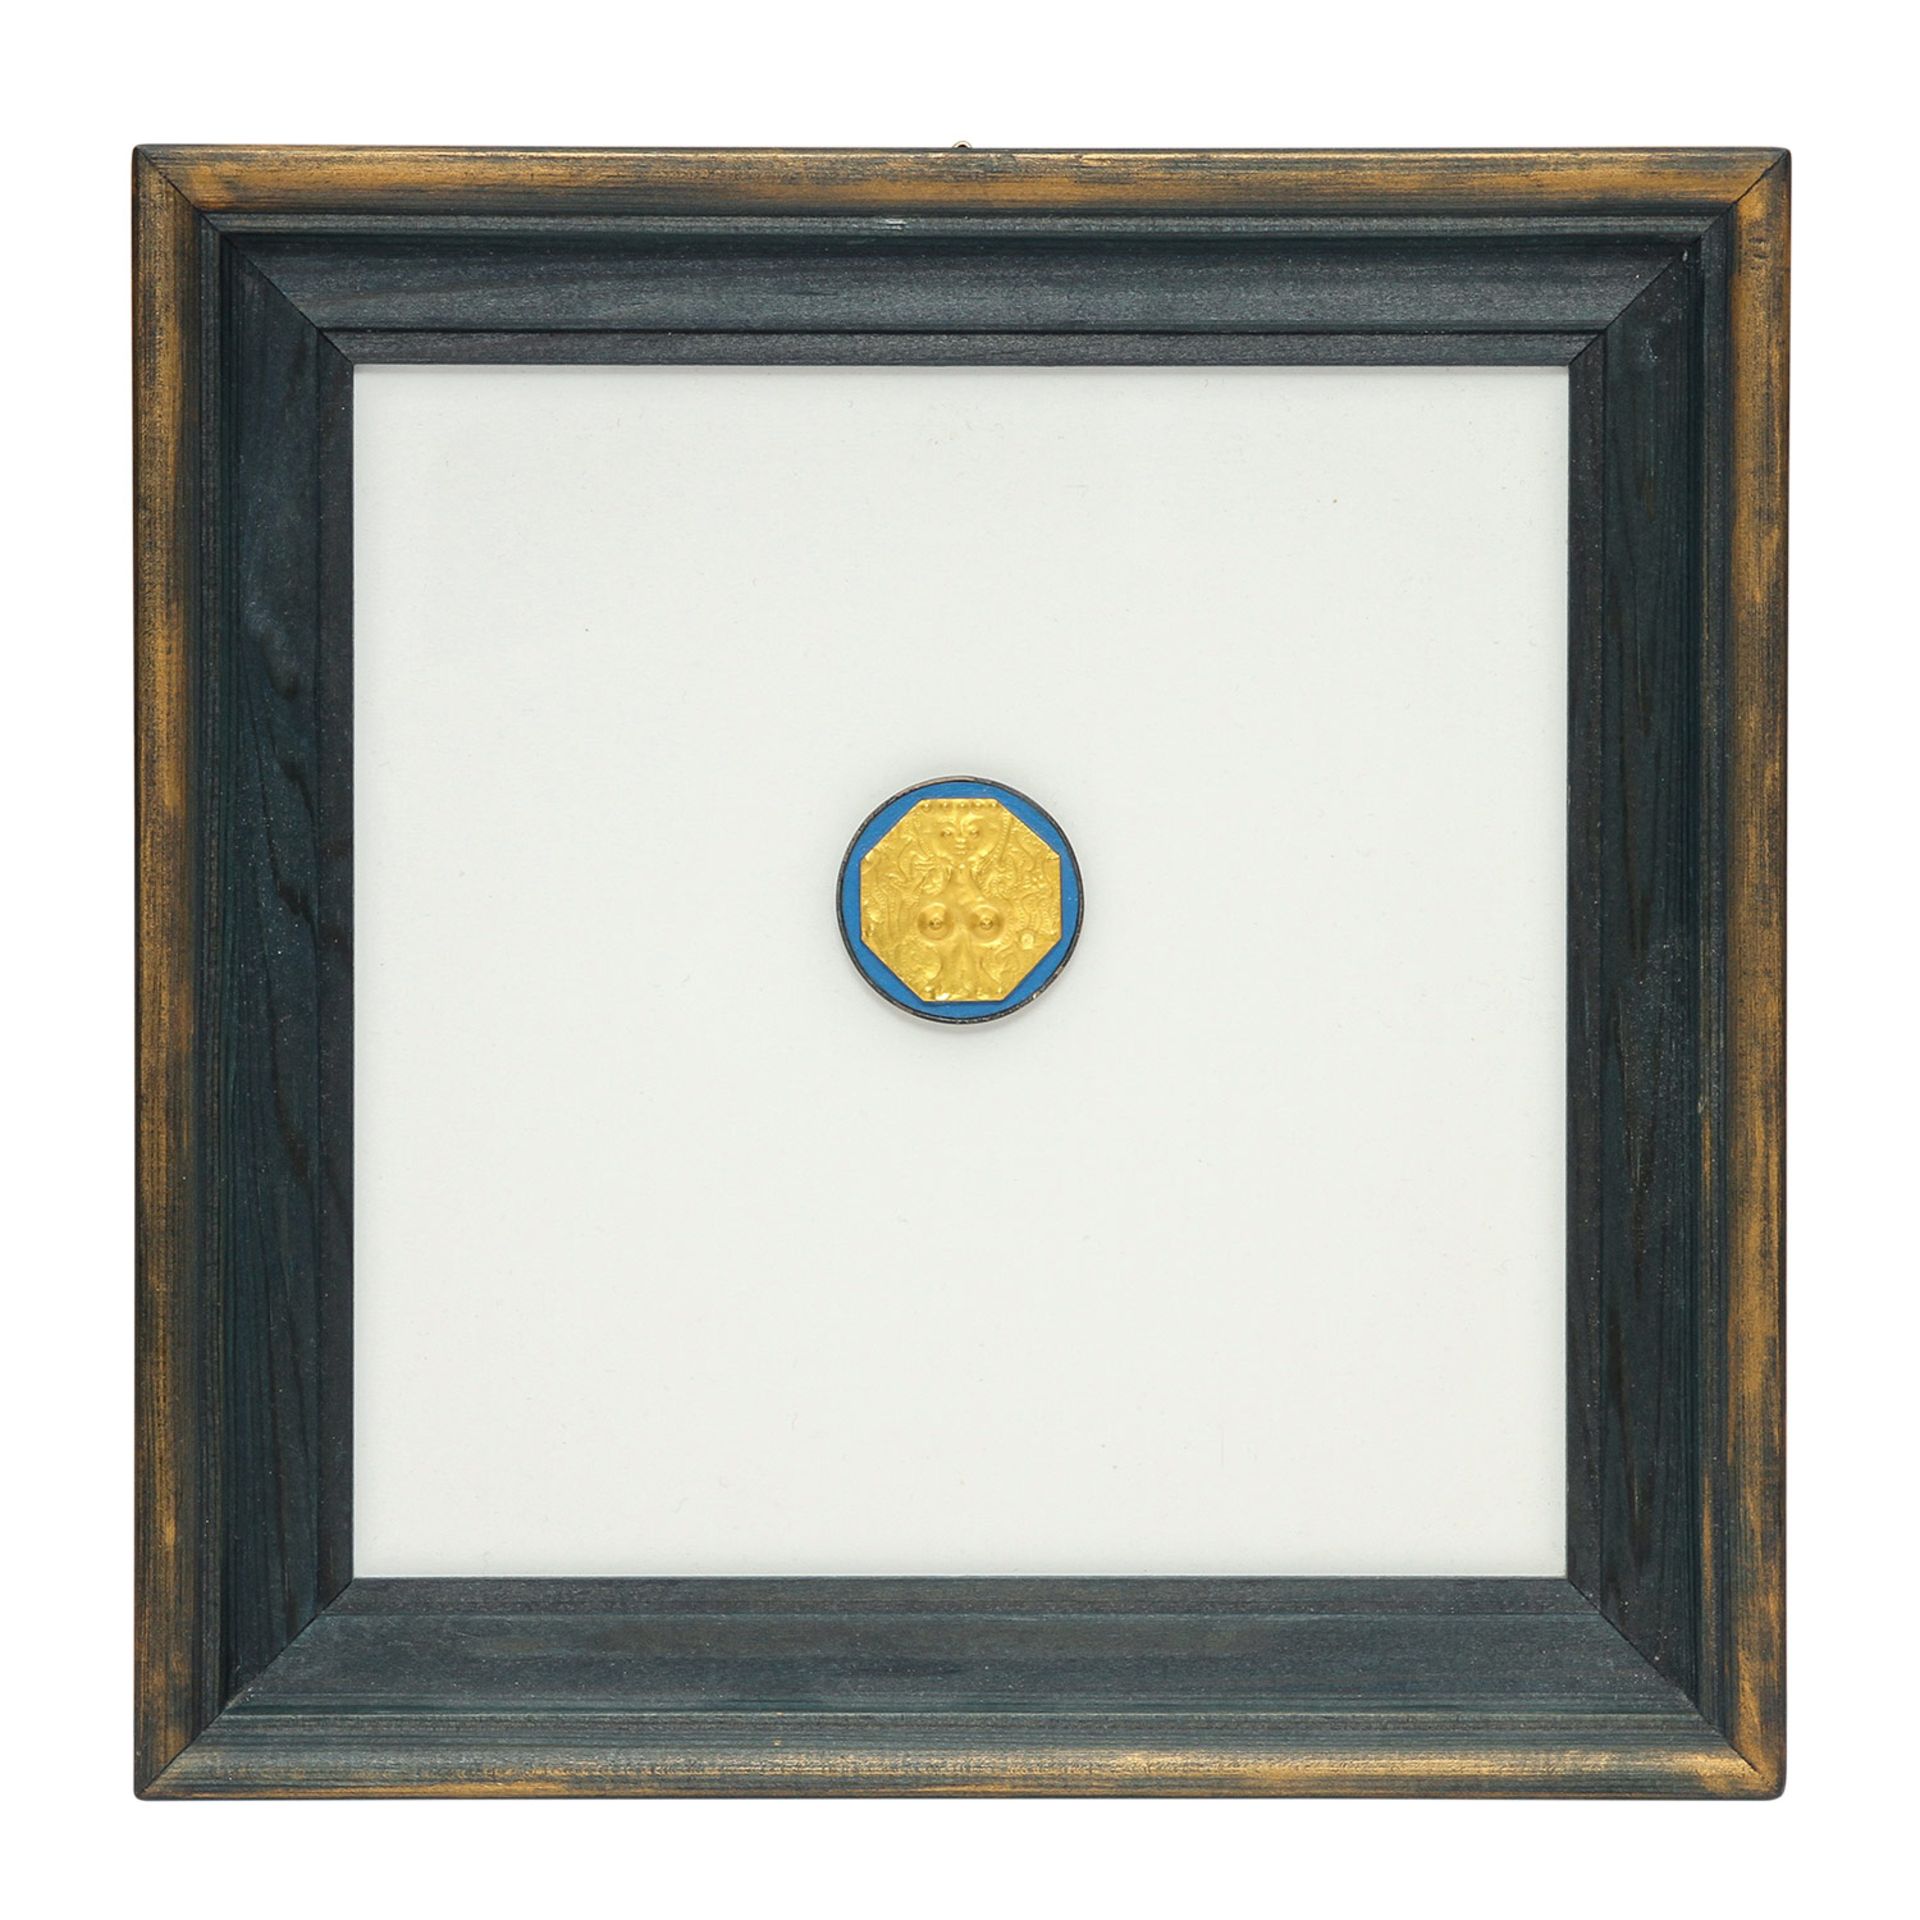 Goldminiatur "Fee" (1980) von E. BURGEL,Gold 900, Silber, getrieben + ziseliert, auf Acryl, mit